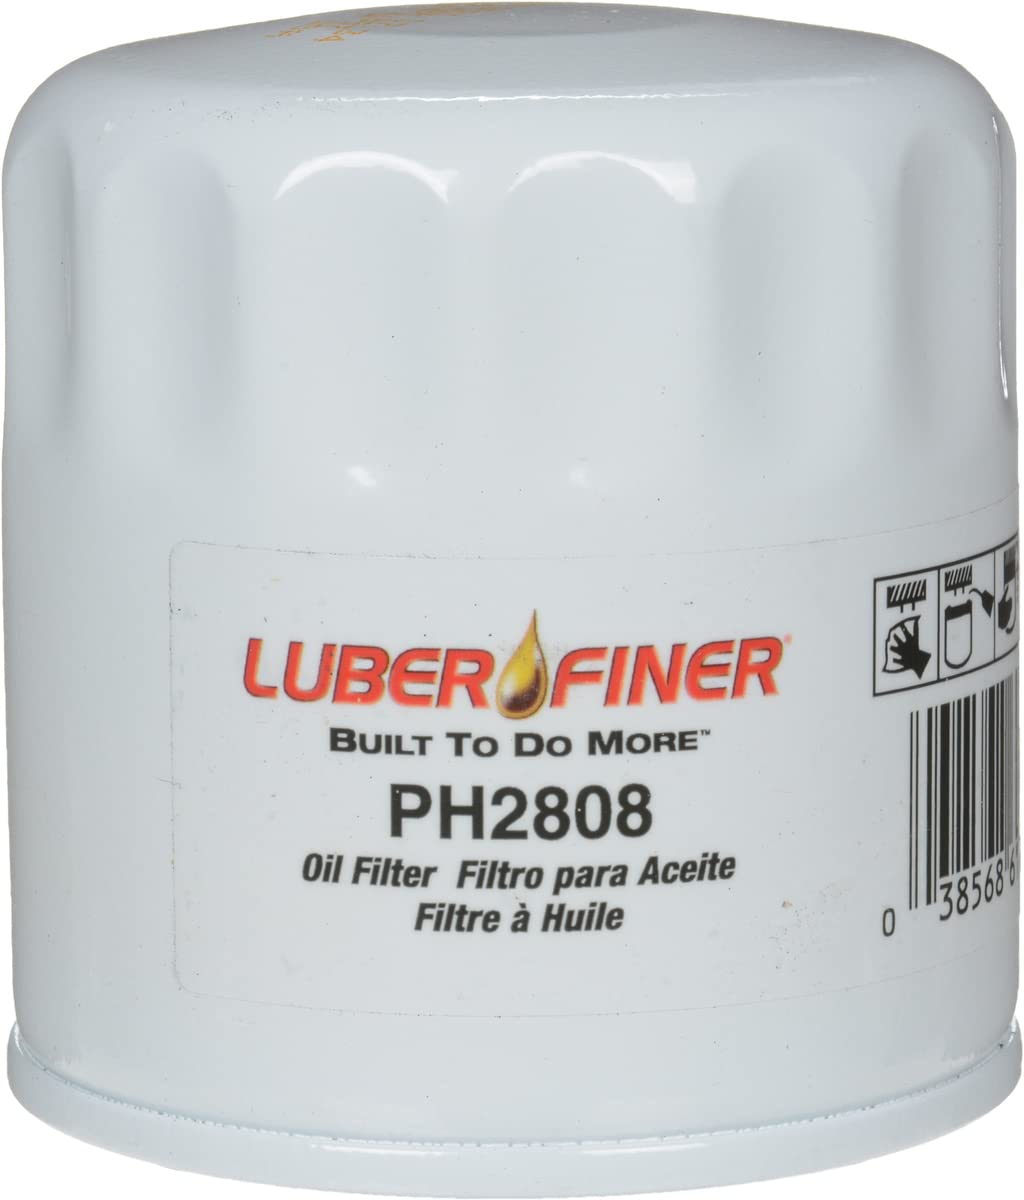 luber-finer ph2808 Ölfilter von Luber-finer